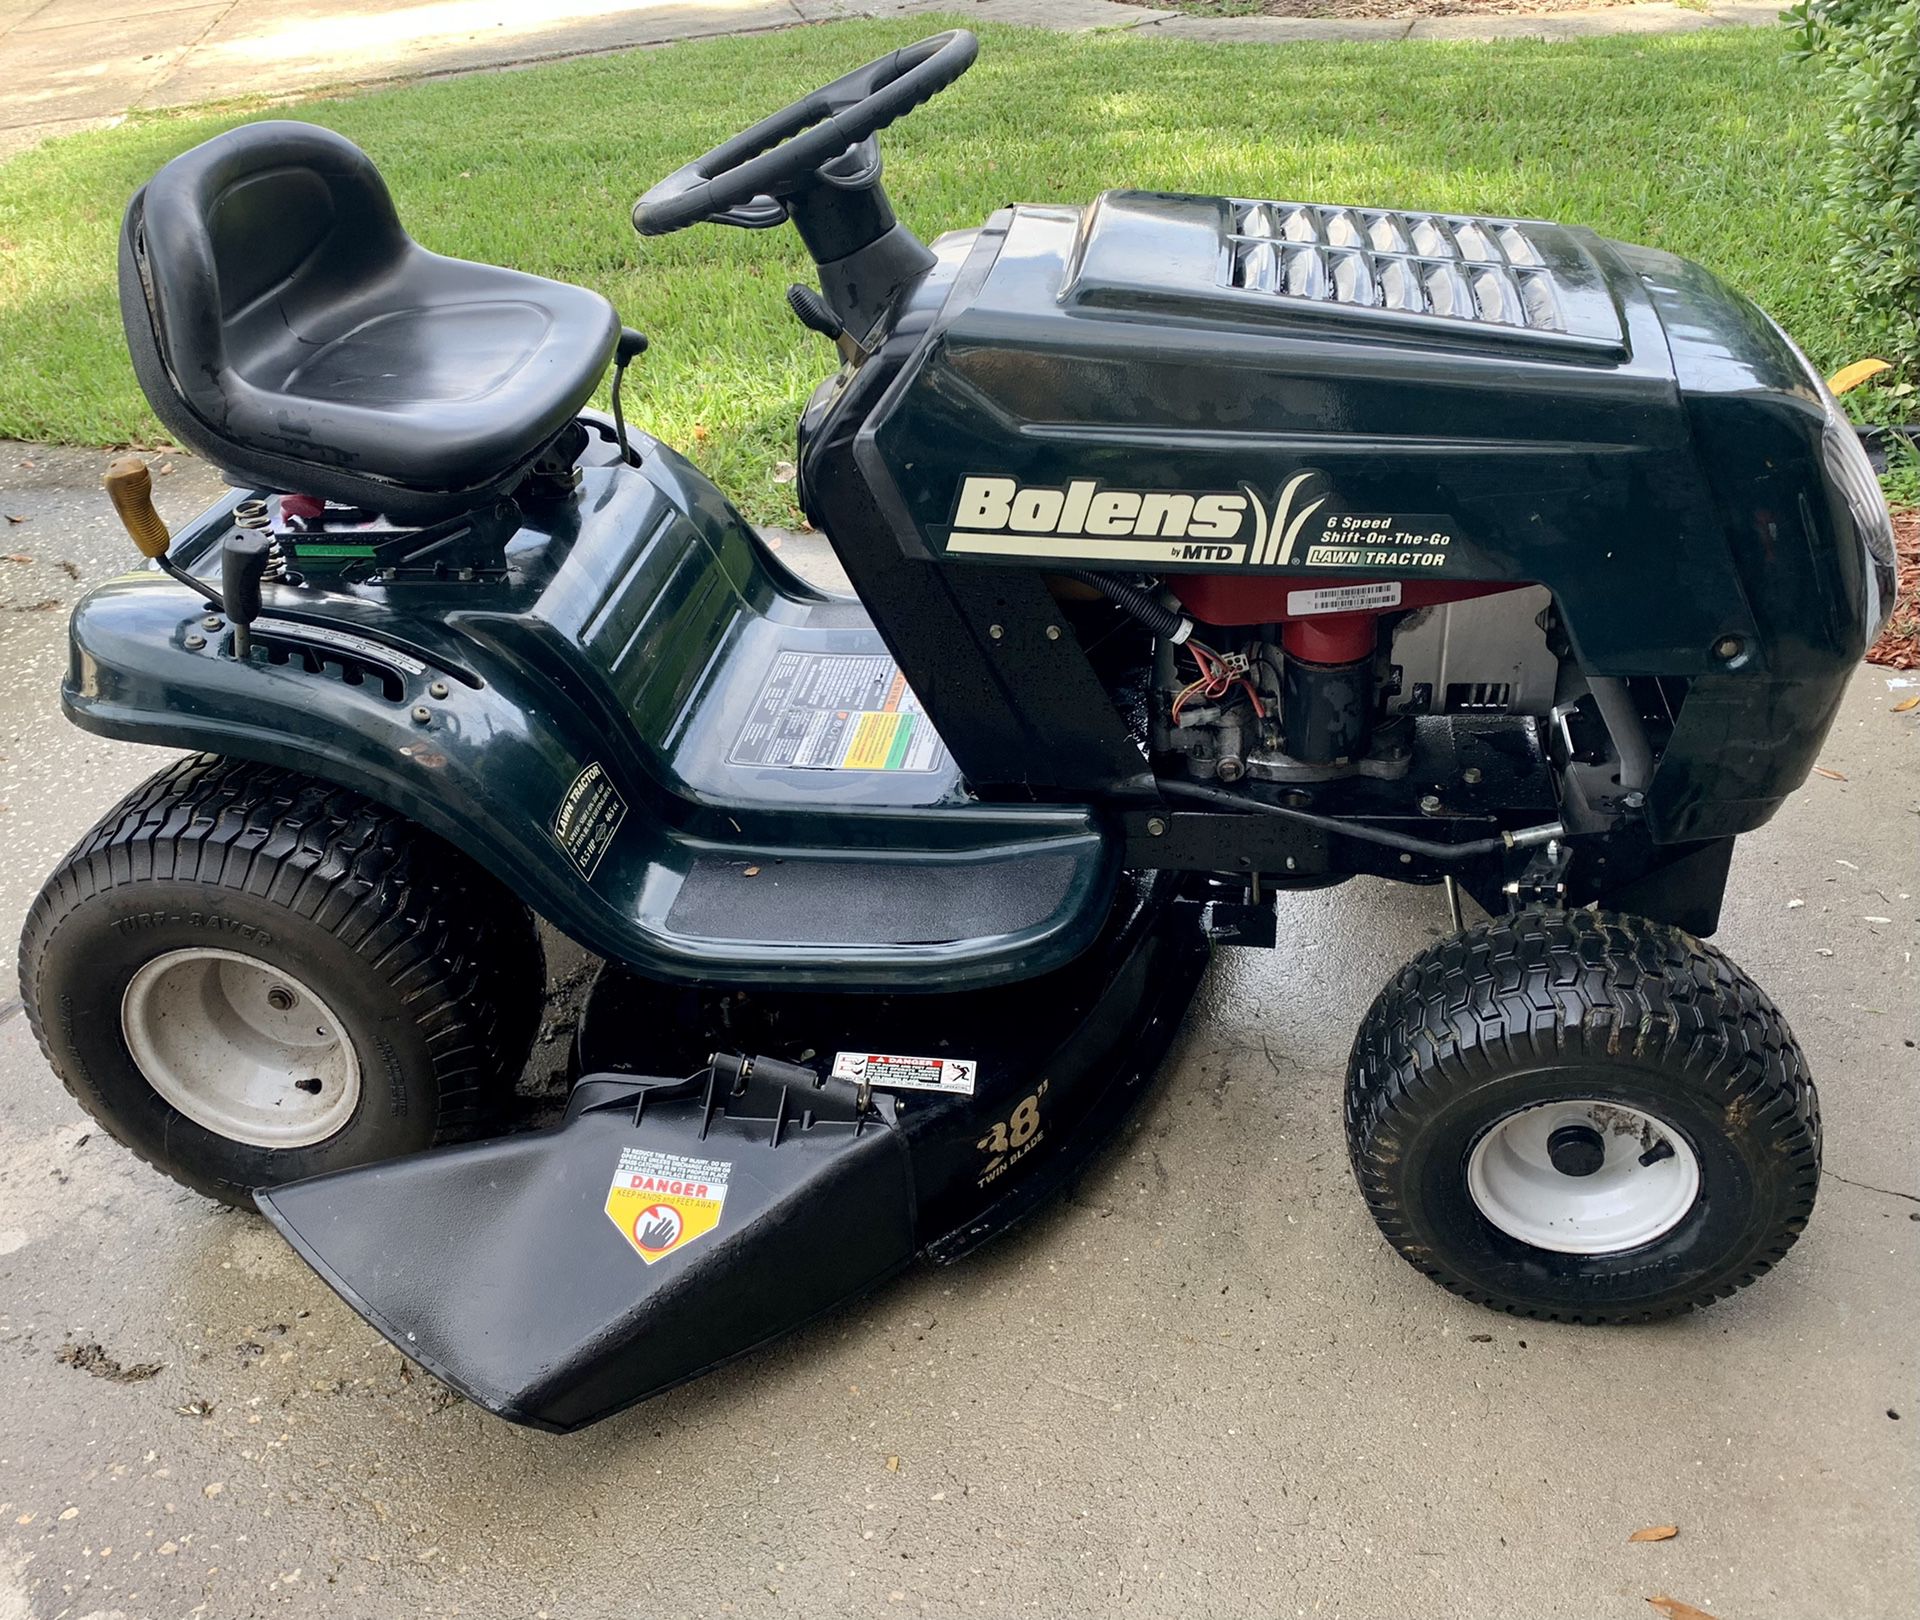 Bolens 38” Lawn Tractor